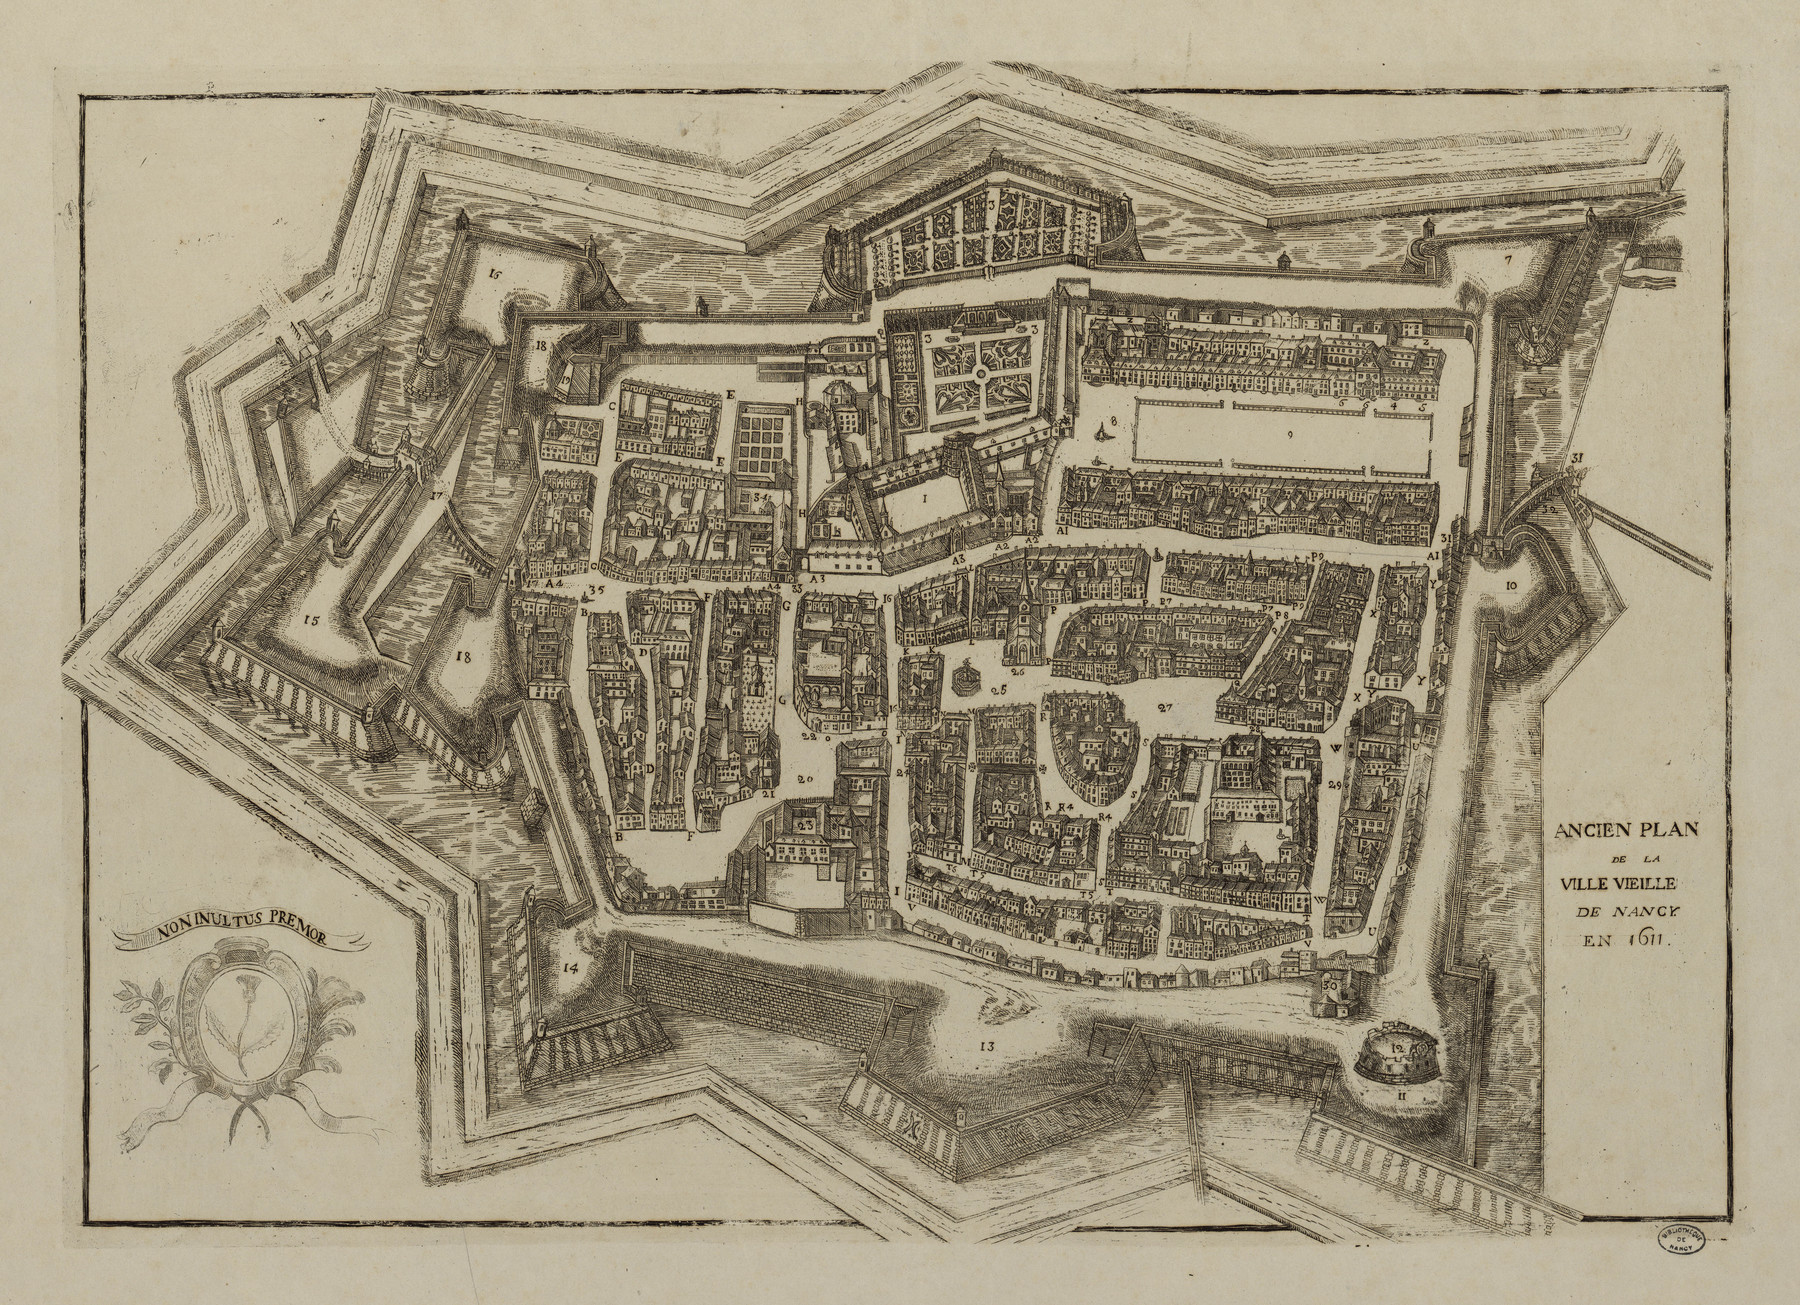 Contenu du Ancien plan de la ville vieille de Nancy en 1611